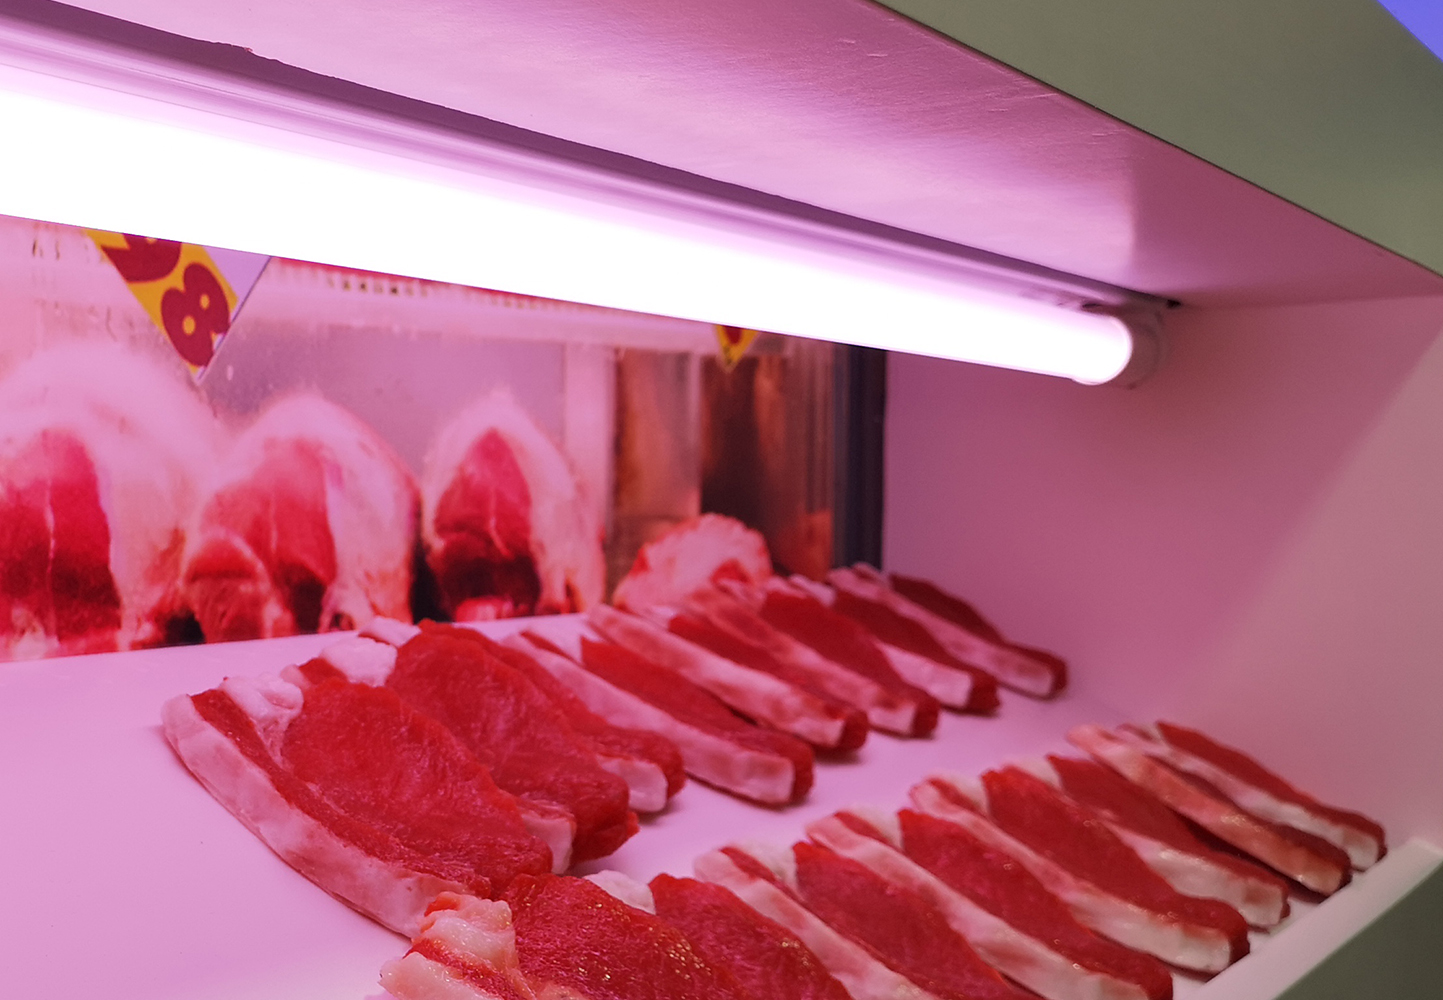 Vous cherchez une Lampe LED ? Tube Led professionnel Meat light haut  rendement (Rose-rouge soft) 150cm